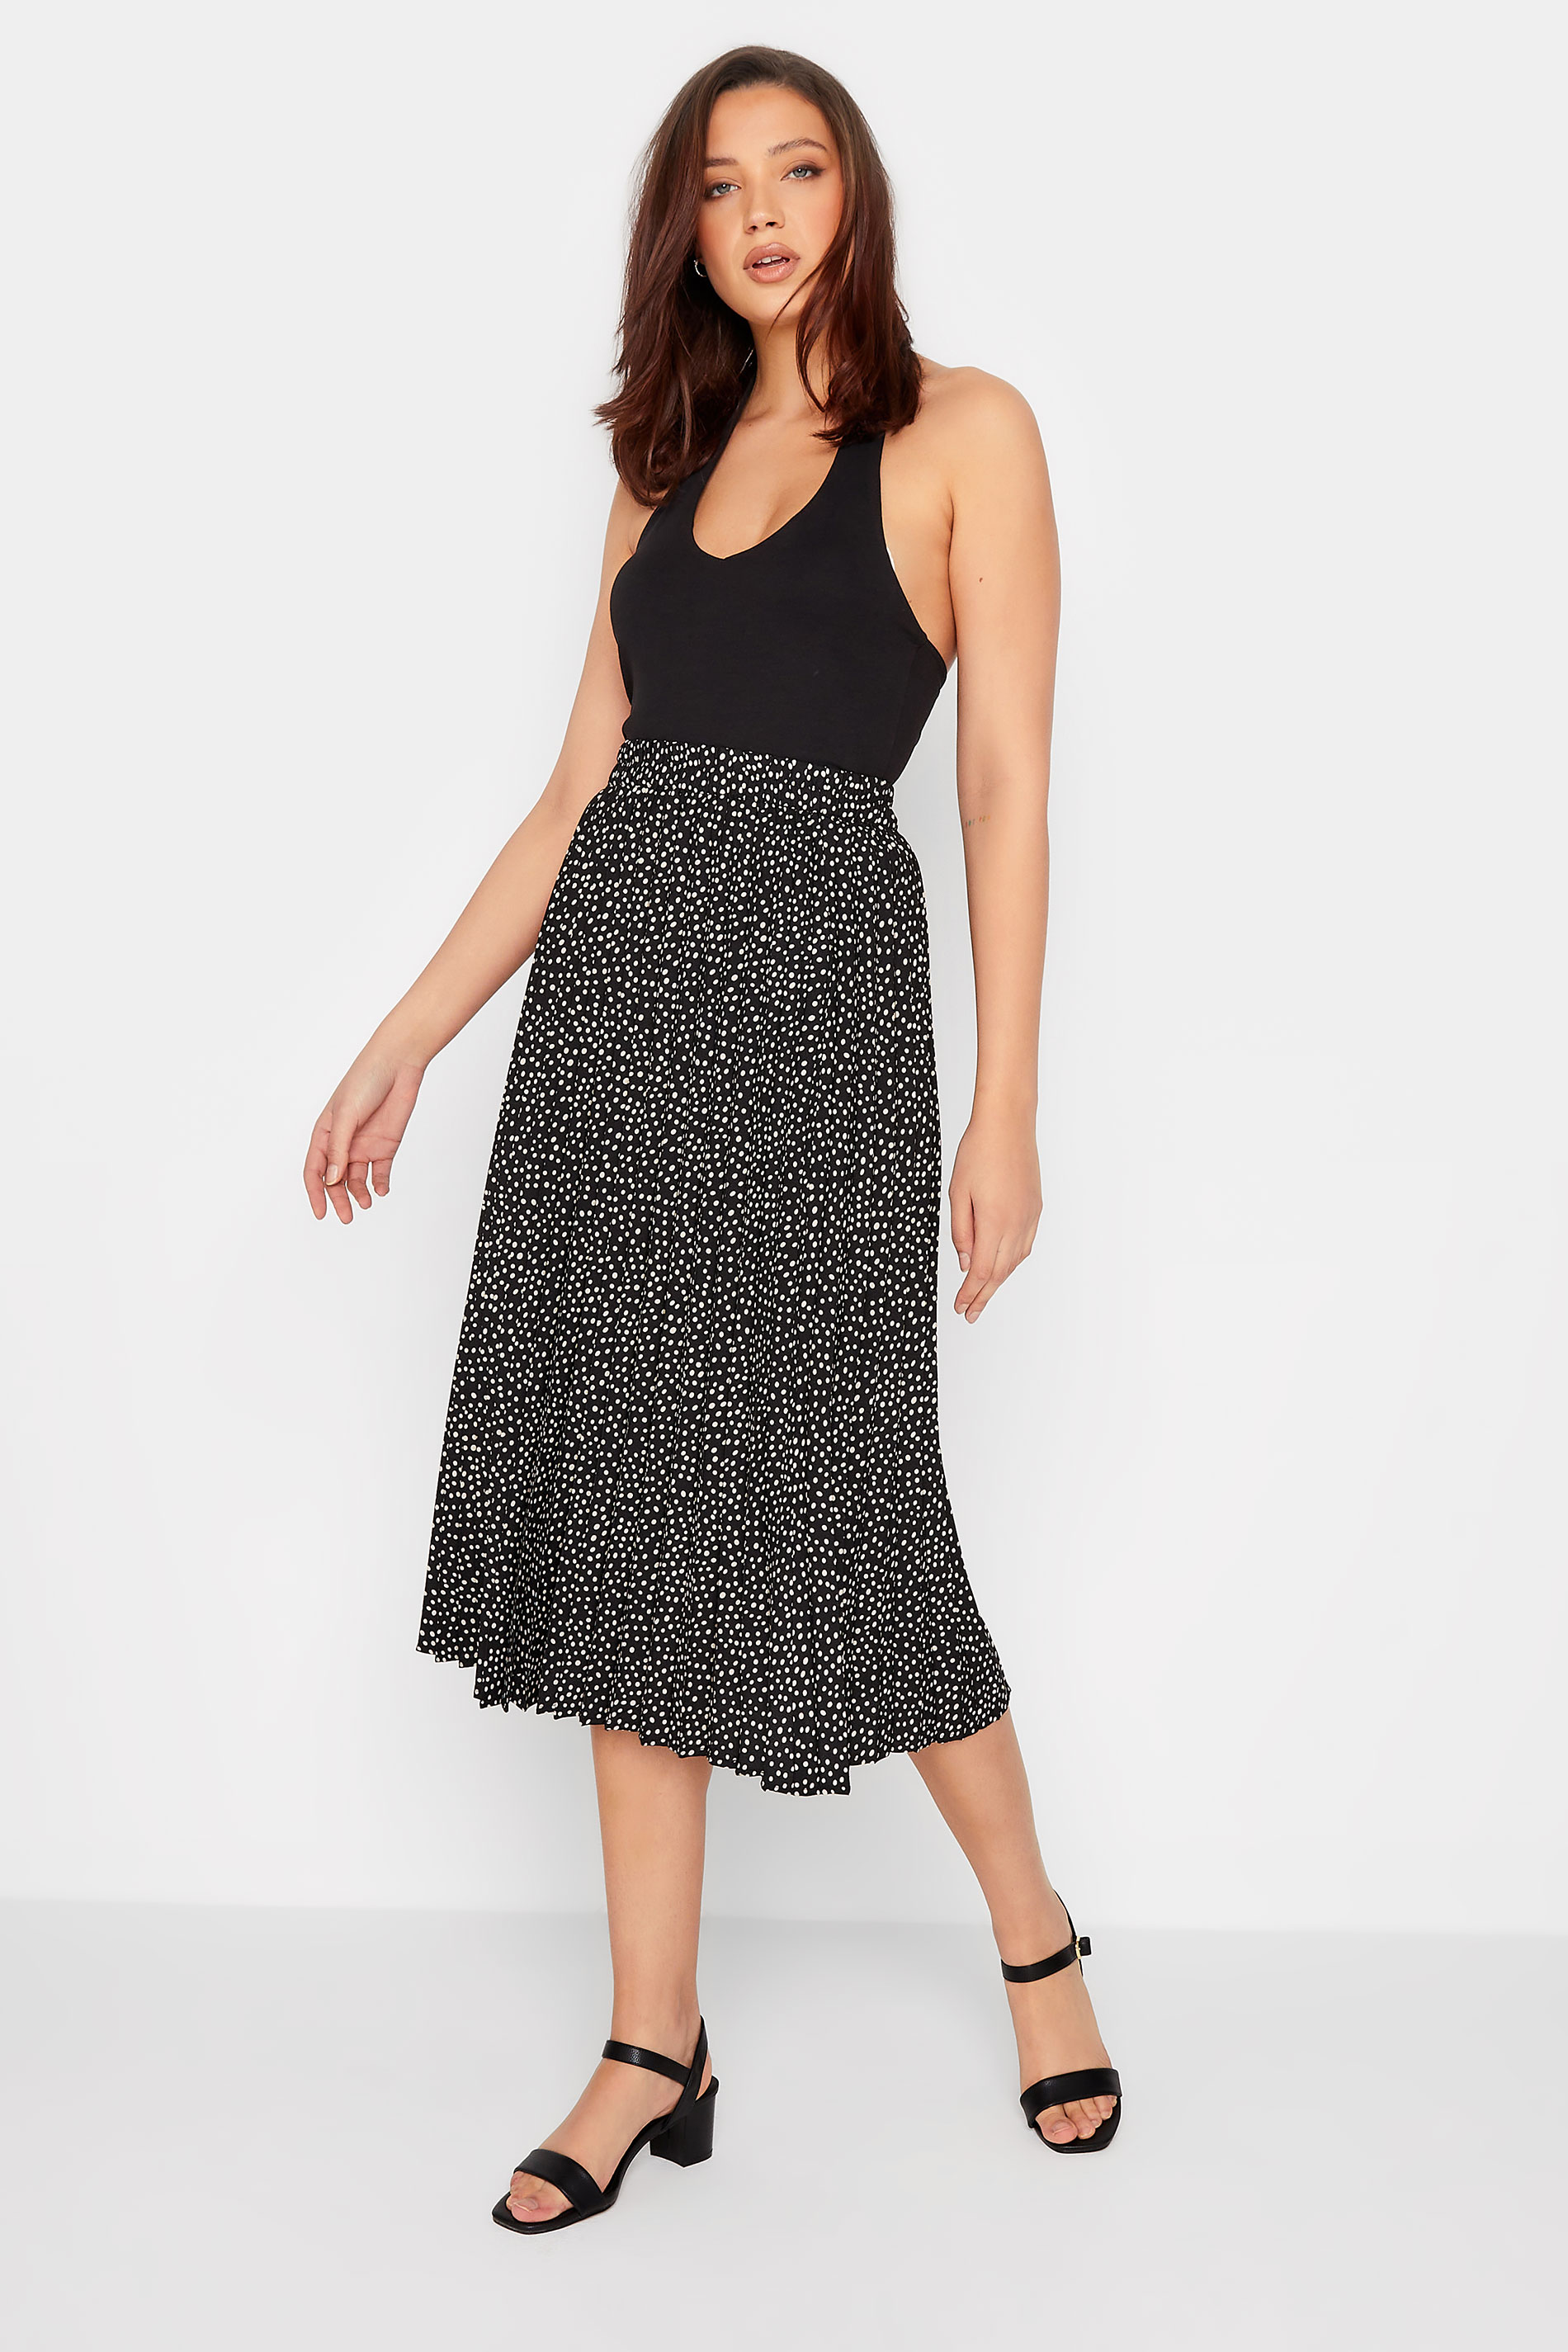 LTS Tall Women's Black Polka Dot Print Pleated Midi Skirt | Long Tall Sally 2